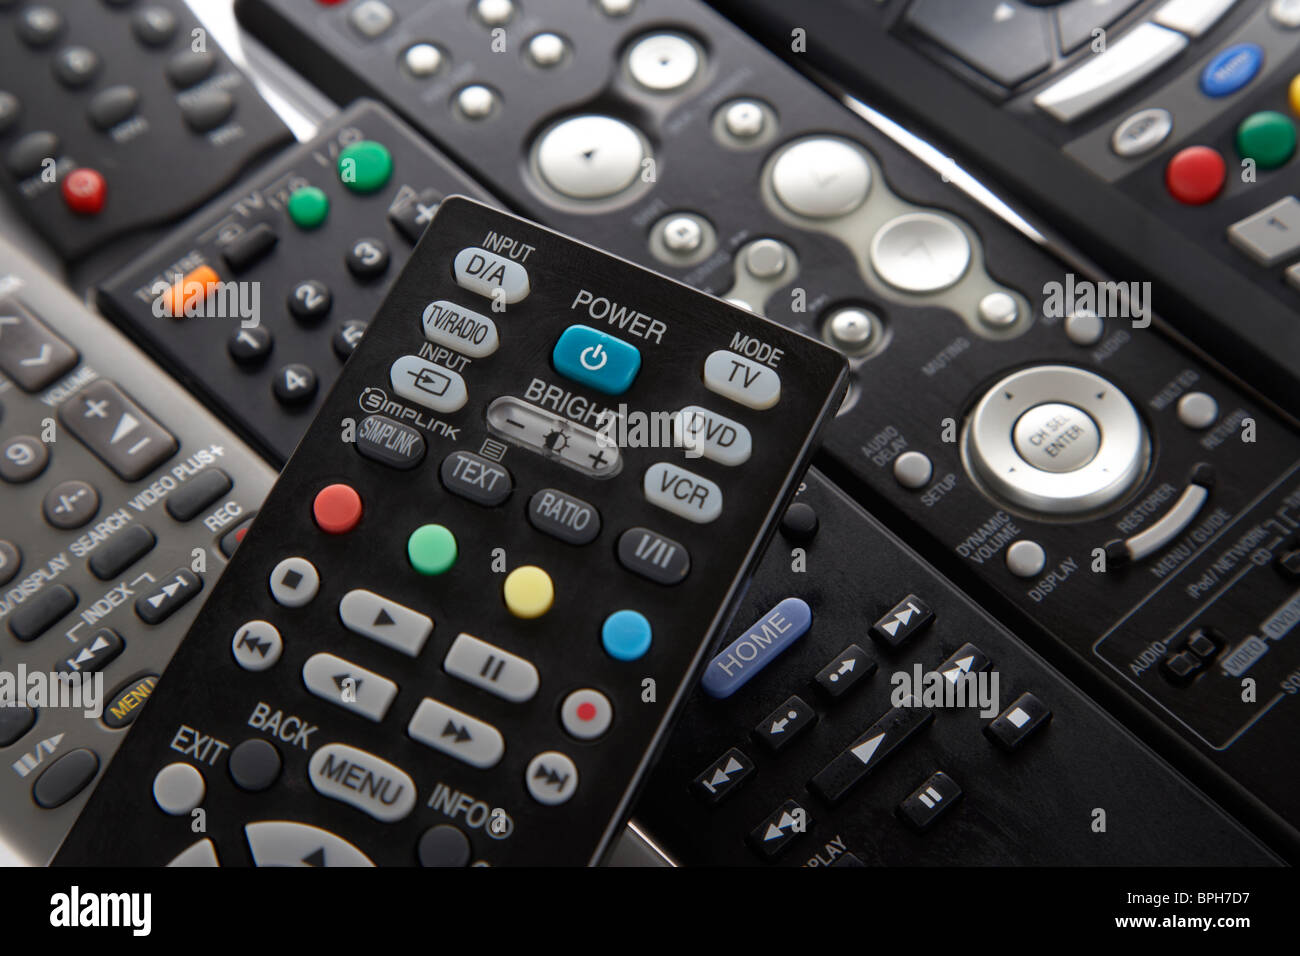 Ampia selezione di famiglia controlli remoti utilizzati per il controllo tv video hifi dvd lettore Blu ray amp home entertainment molti Foto Stock